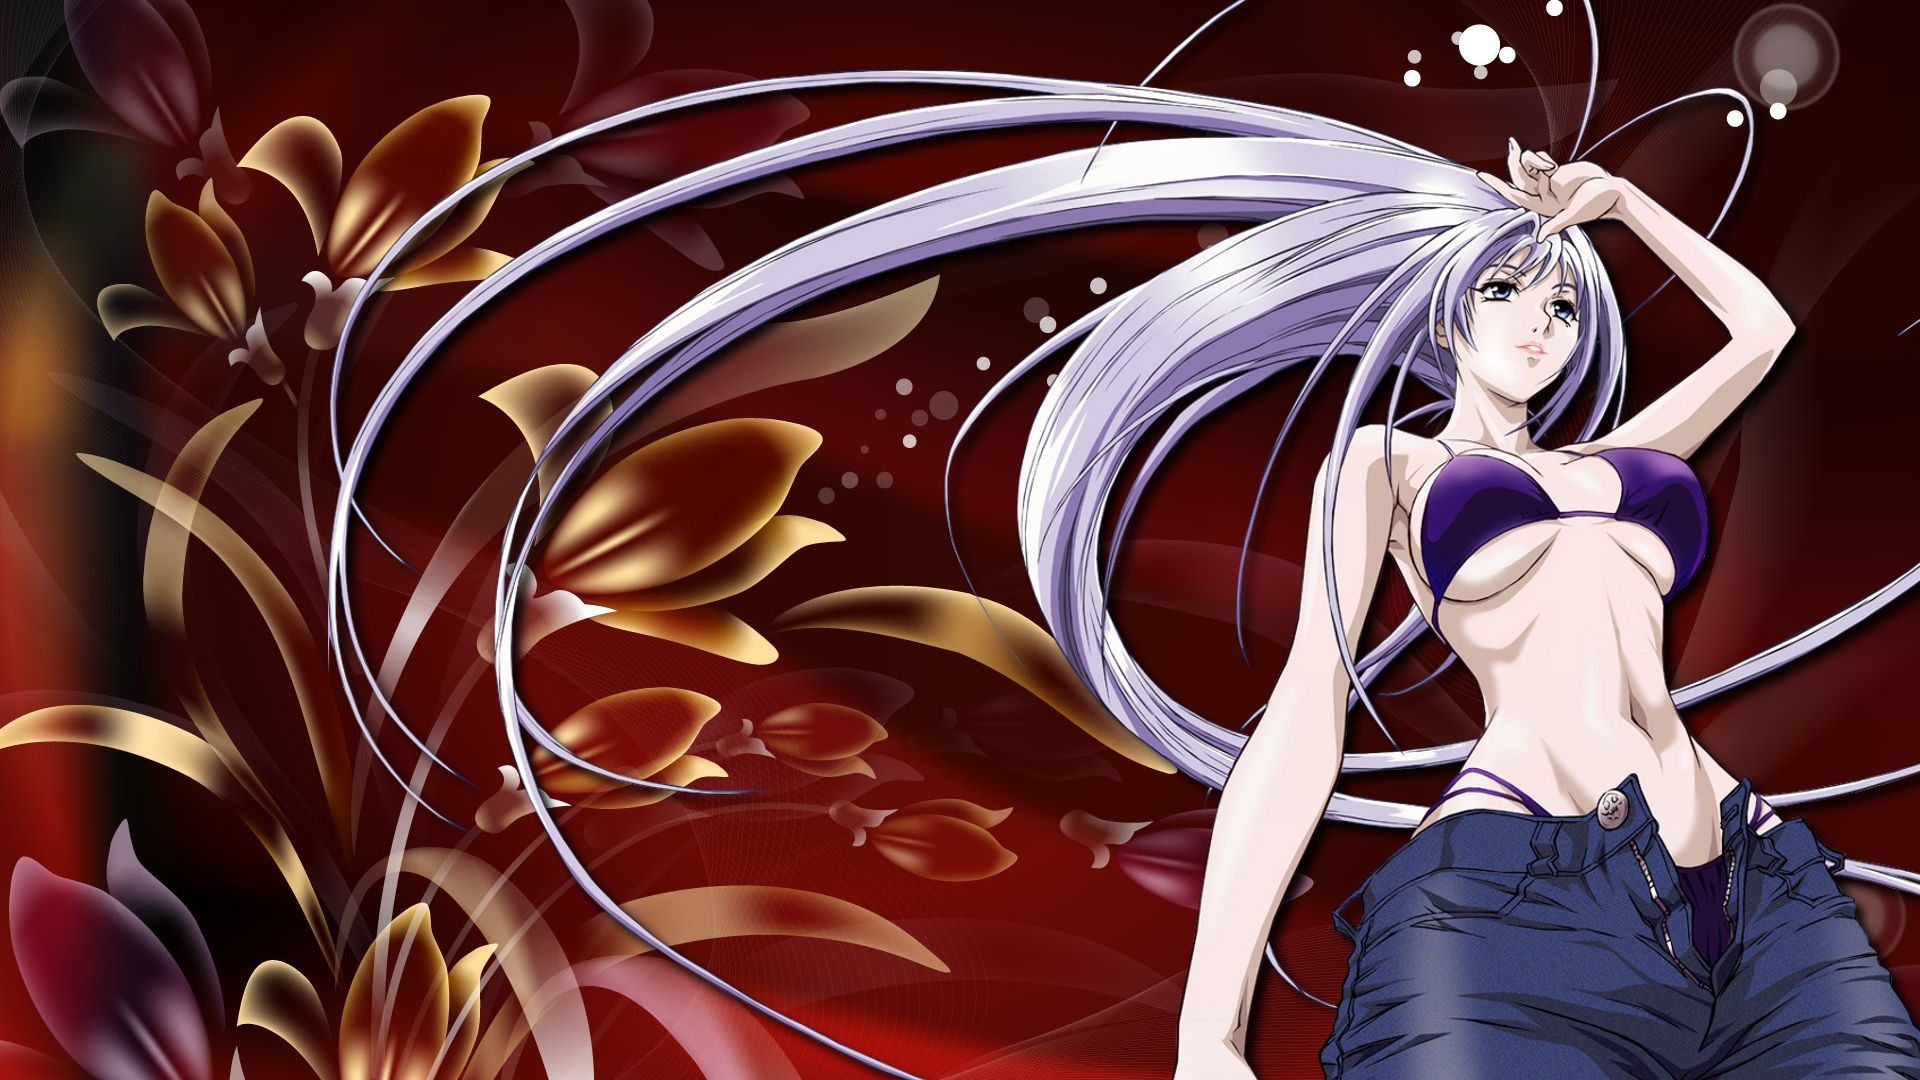 Free download Anime Girl Wallpaper Full Desktop Background